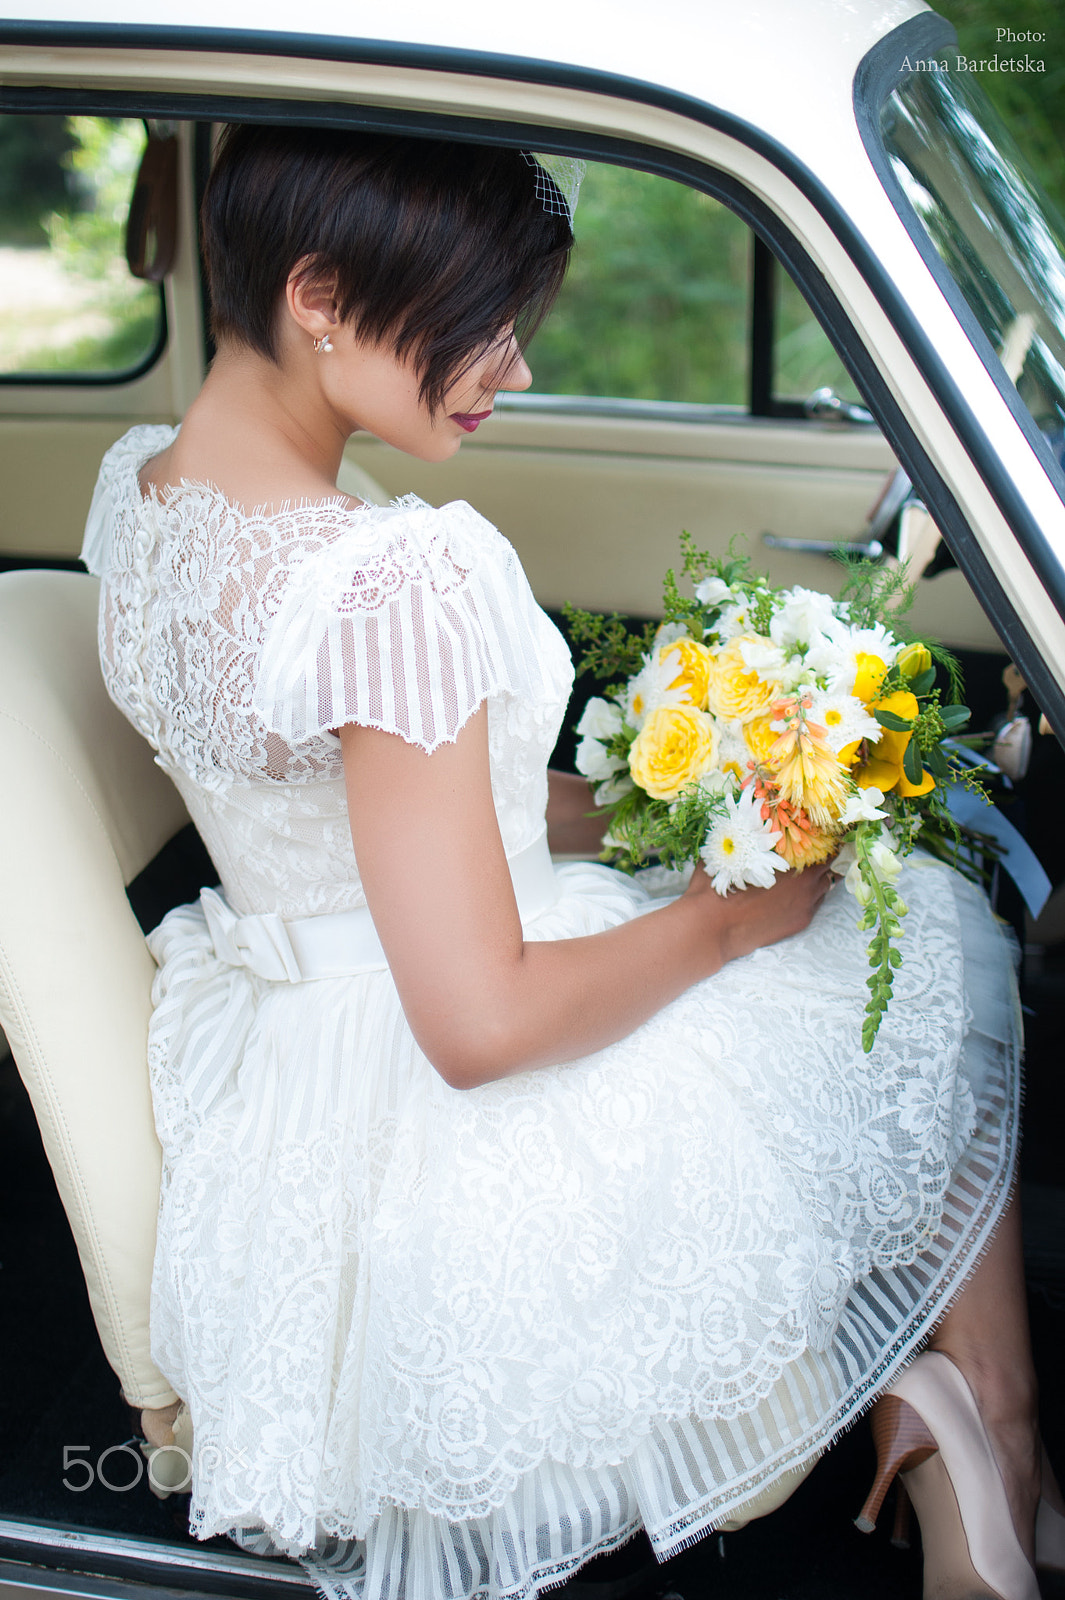 Nikon D300 + Nikon AF-S DX Nikkor 35mm F1.8G sample photo. Wedding dress photography